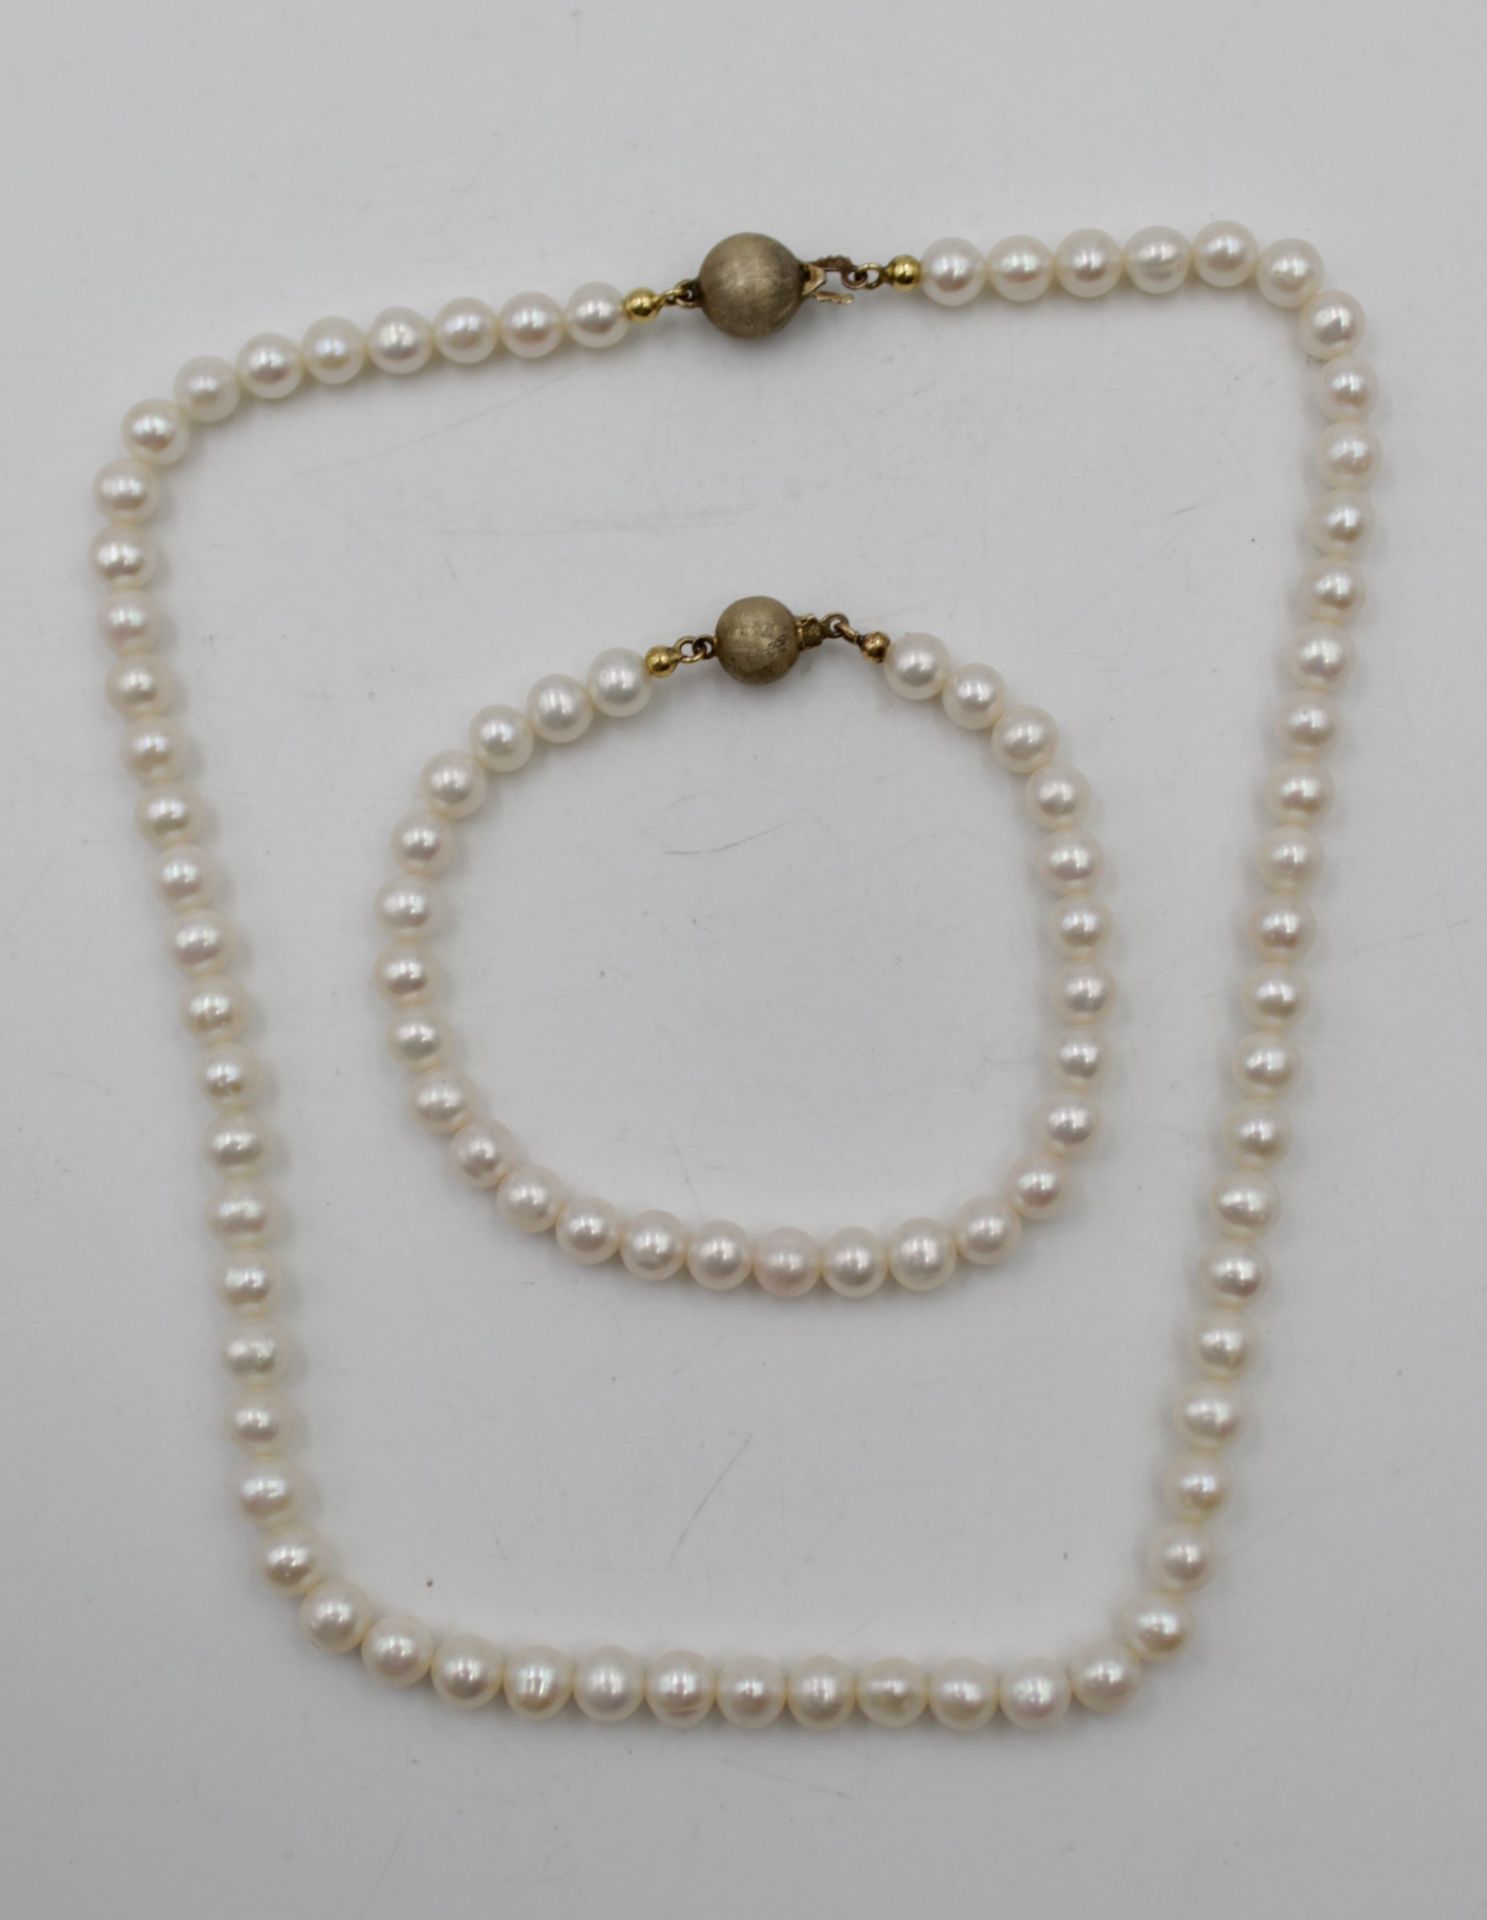 Armband und Kette mit Perlen Schließen Silber 925 vergoldet , Armband L- 18cm Kette L-42cm